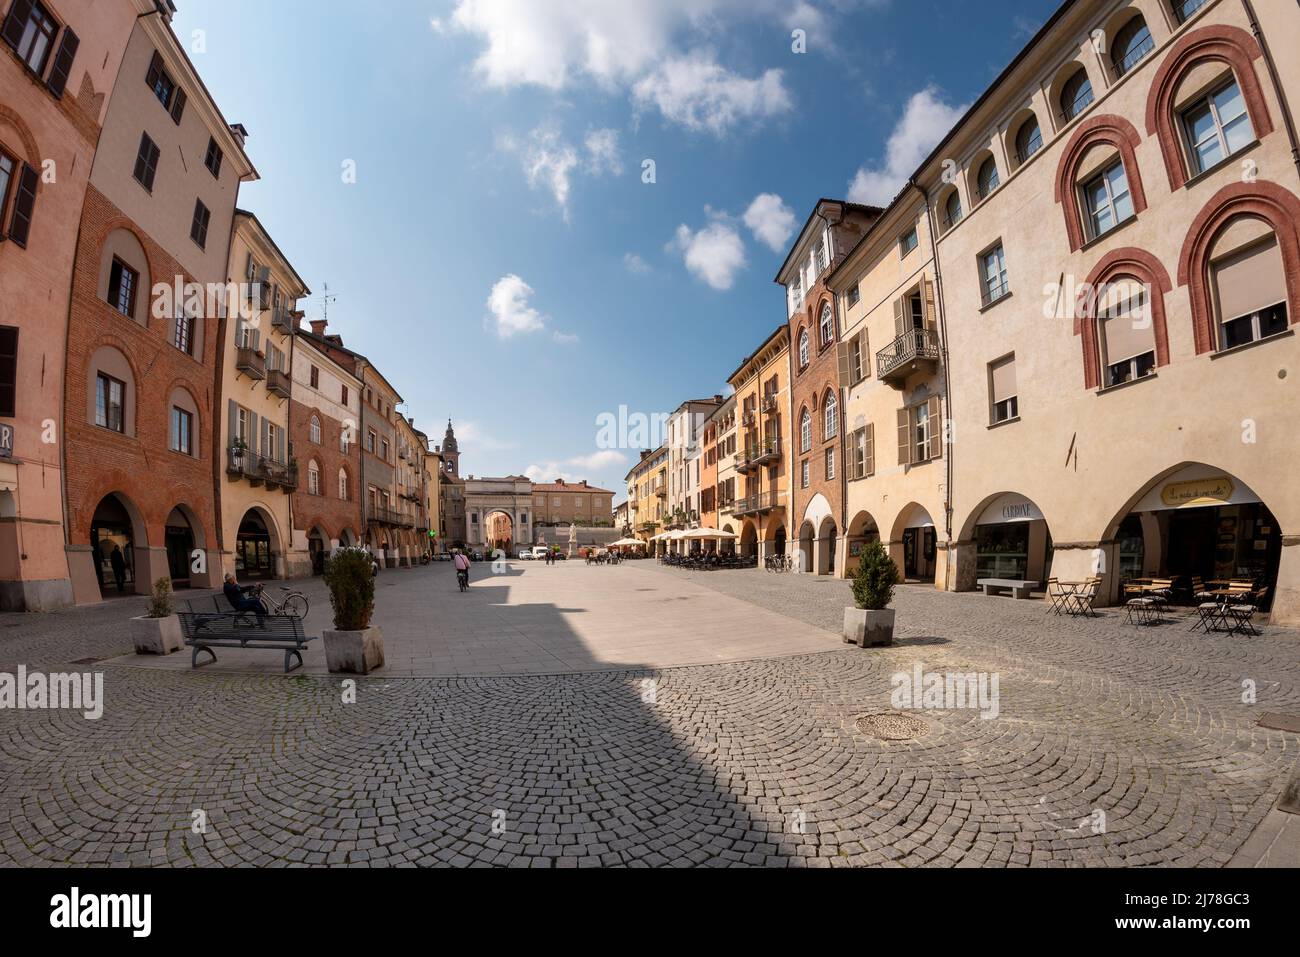 Savigliano, Cuneo, Piedmont, Italia - 04 de mayo de 2022: Piazza Santarosa, plaza principal con edificios históricos de origen medieval, visión de los peces Foto de stock